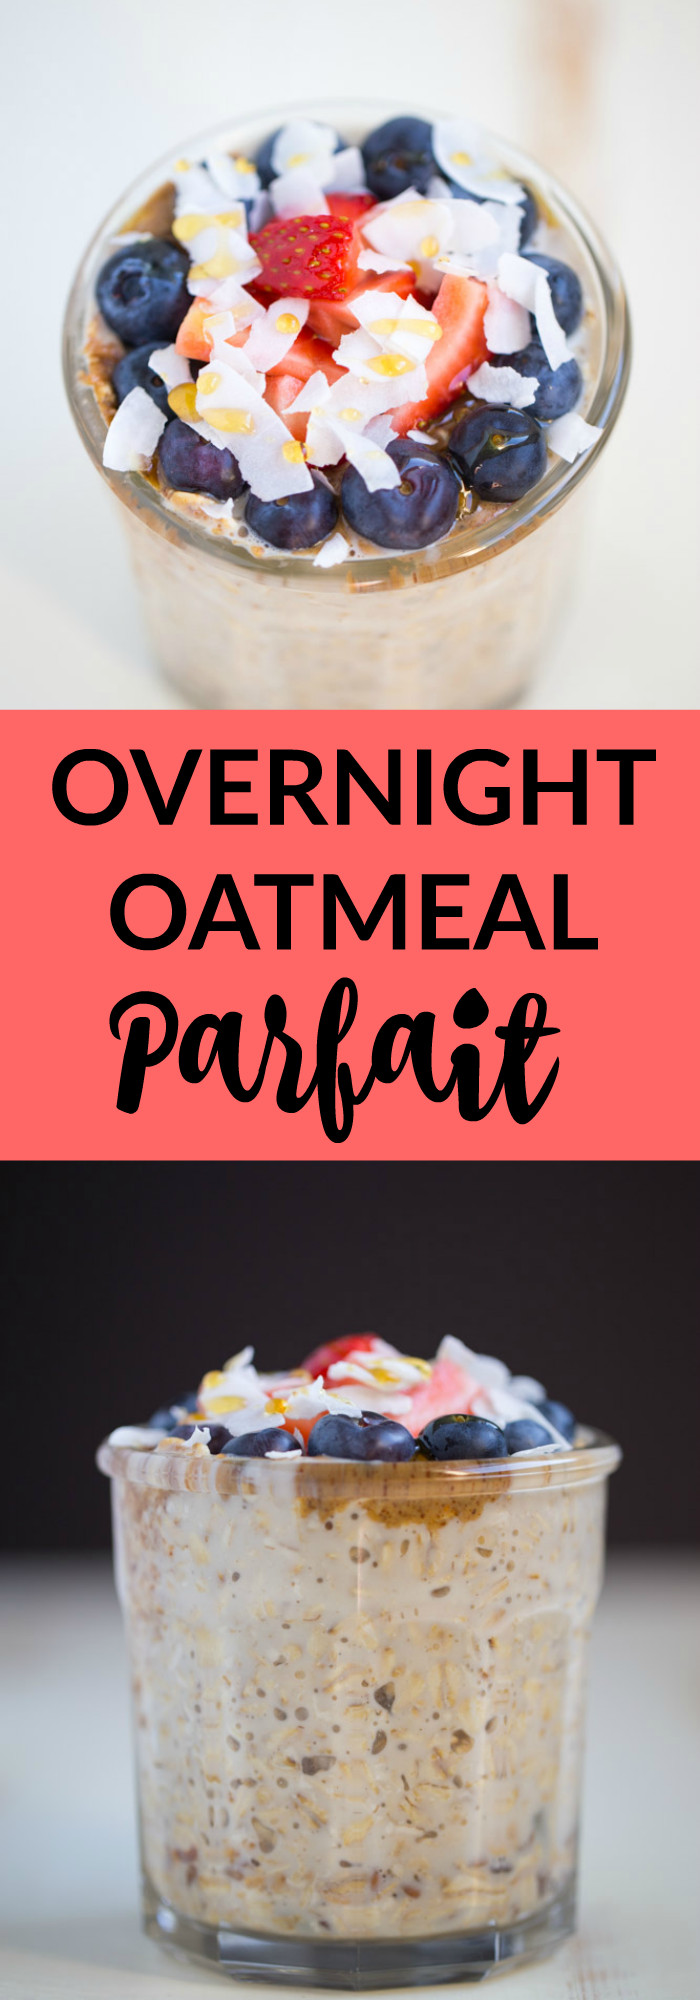 Dairy Free Overnight Oats
 Overnight Oatmeal Parfait ve arian gluten free